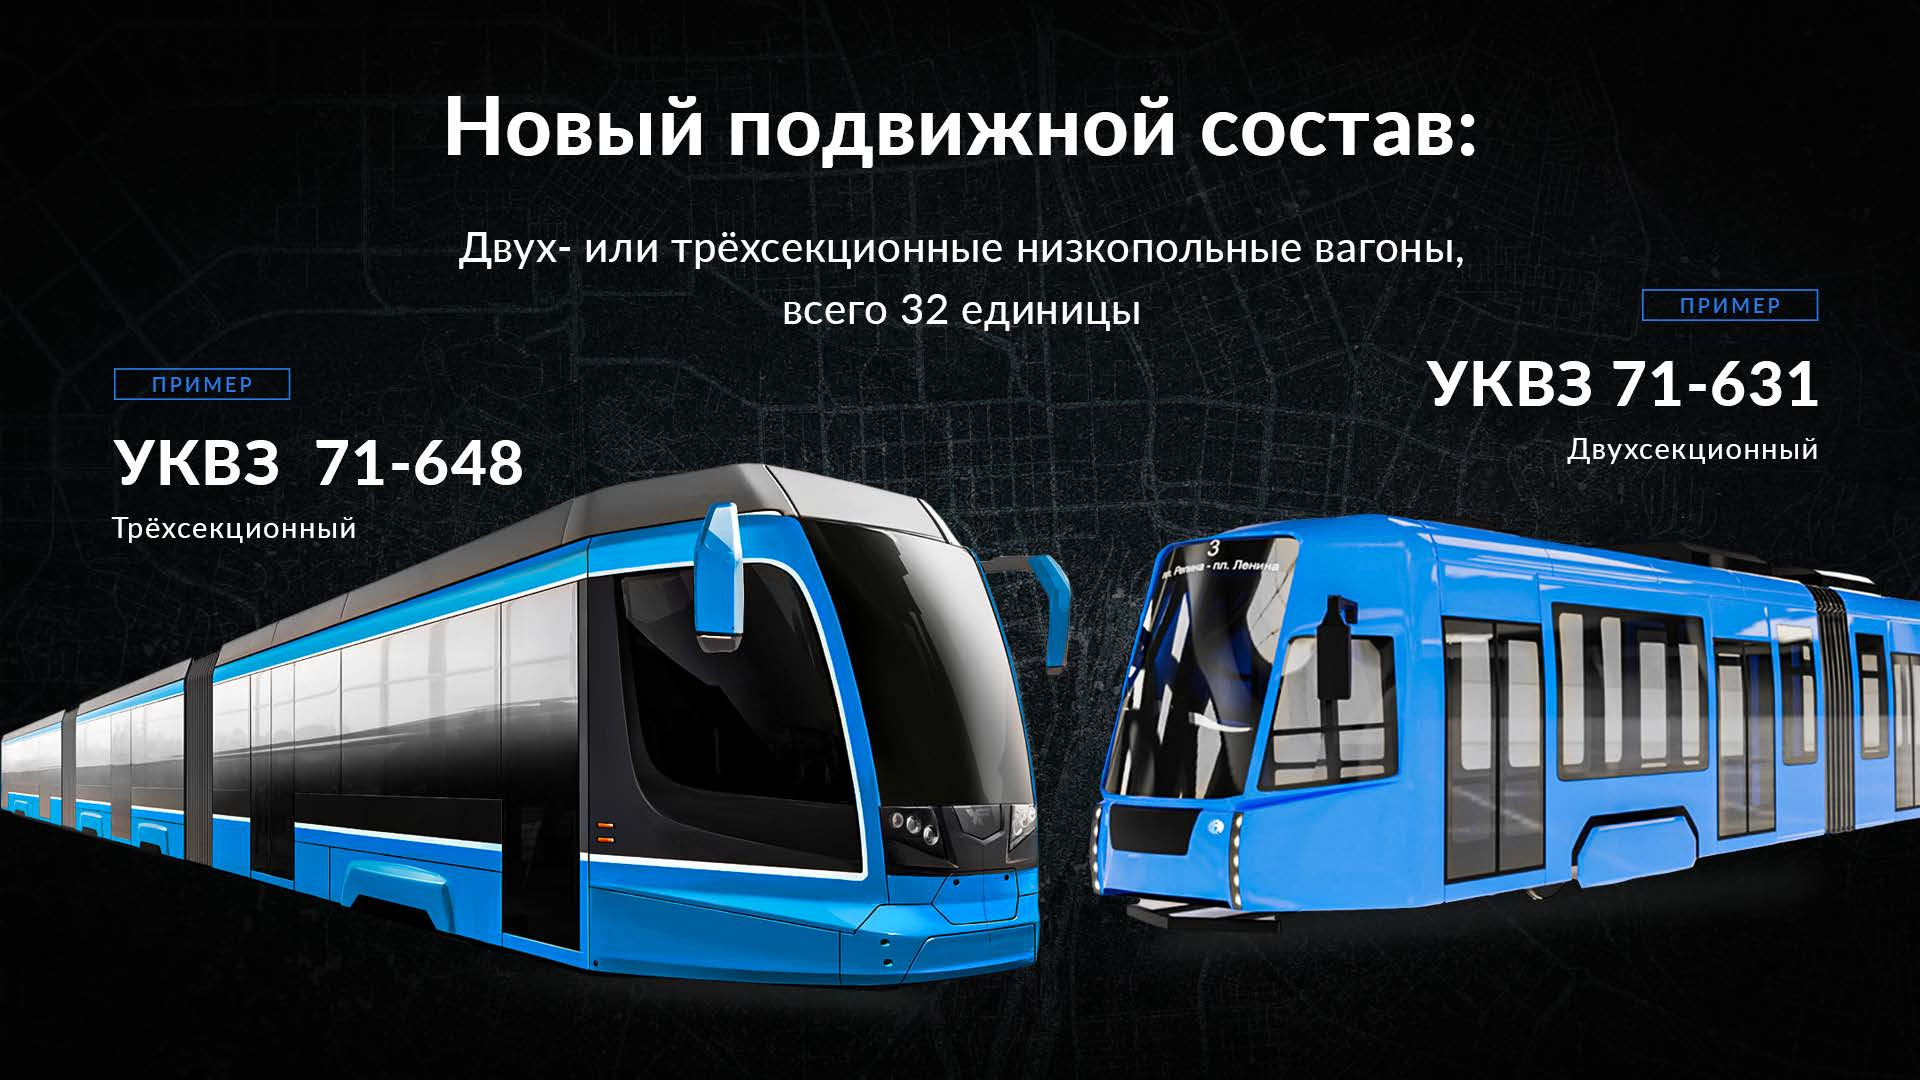 Для метротрама планируют закупить 32 новых вагона большой вместимости. В них можно перевозить в 1,5–2 раза больше пассажиров, чем в существующих трамваях